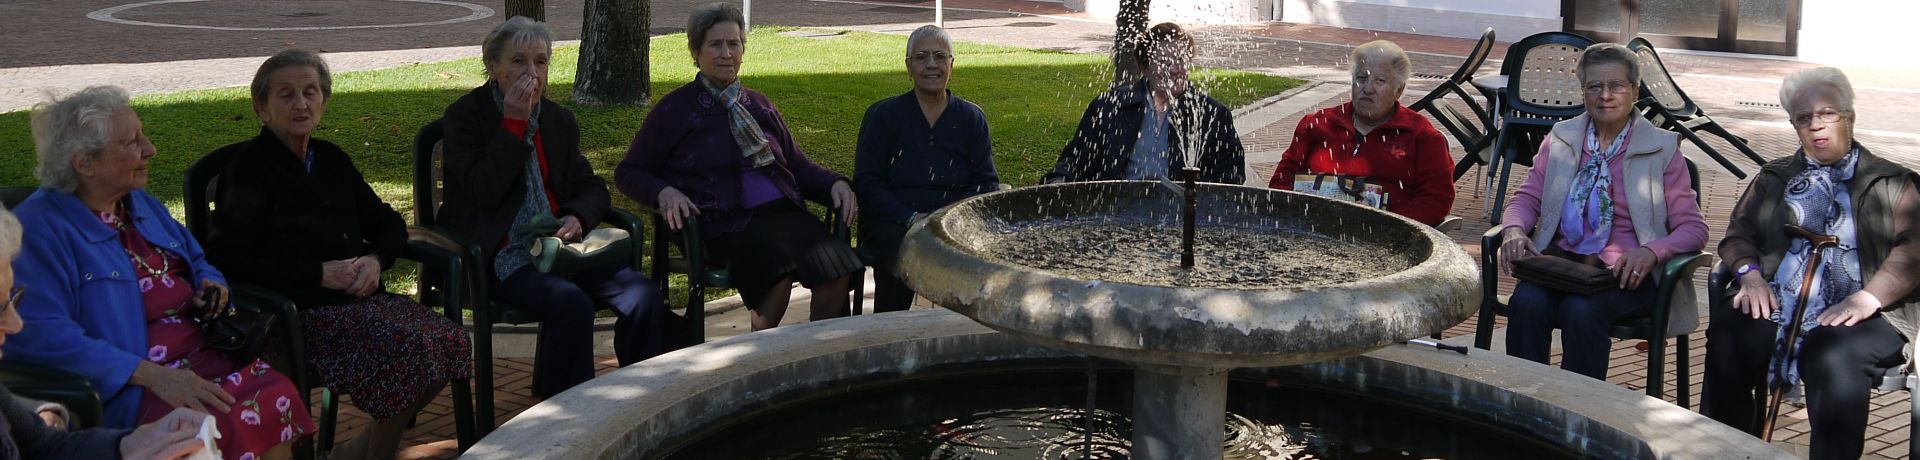 Istituto Sacro Cuore Roma Scuola Sacro Cuore - Foto di gruppo in giardino davanti alla fontana